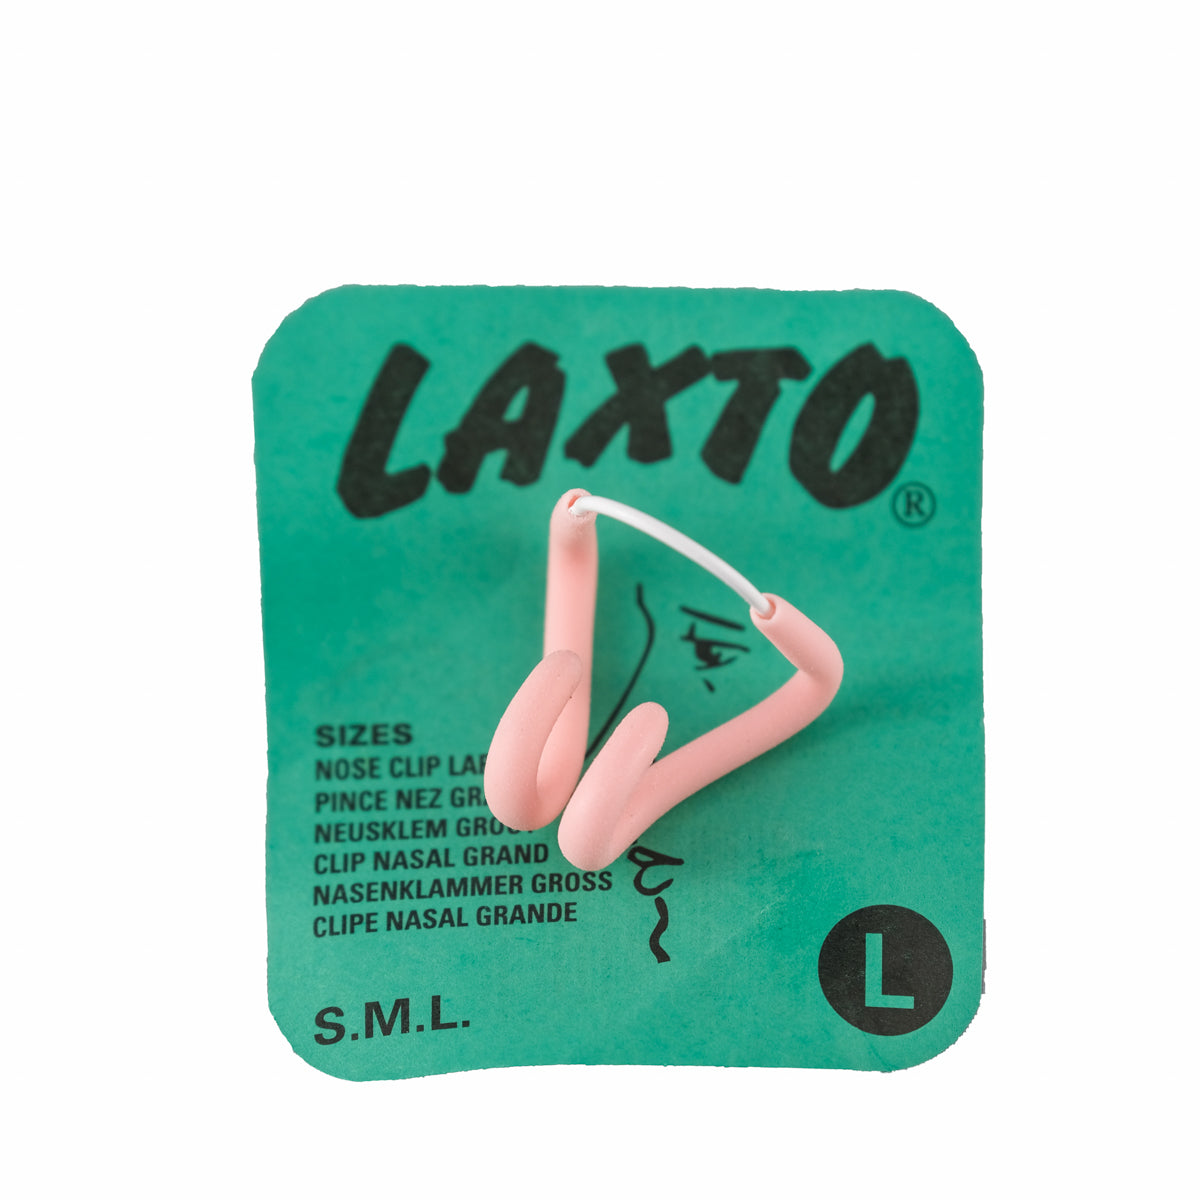 Accessoires de natation -  PMR  Pince-nez Laxto - remise selon quantités